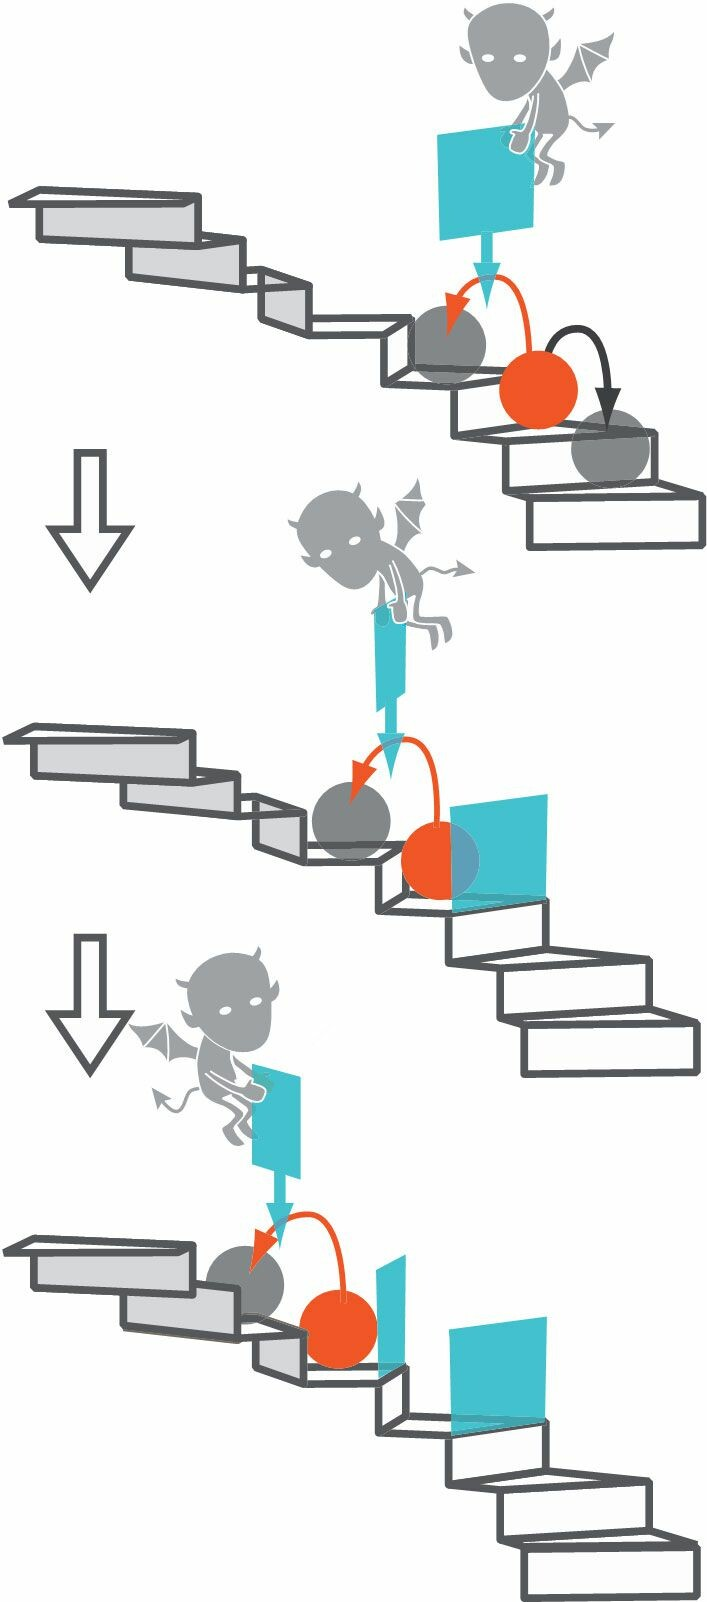 图4. 佐野正明的小组在2010年设计了一个麦克斯韦妖式的实验。他们使用倾斜的光学晶格来创造“螺旋楼梯”，使粒子倾向于“下楼”。实验人员实时监测粒子位置的波动，当粒子“上楼”时，他们改变电压并将其困在较高的位置，正如麦克斯韦妖关闭活动门。| 来源：Adapted from S. Toyabe et al., Nat. Phys. 6, 988, 2010, doi:10.1038/nphys1821.<br label=图片备注 class=text-img-note>